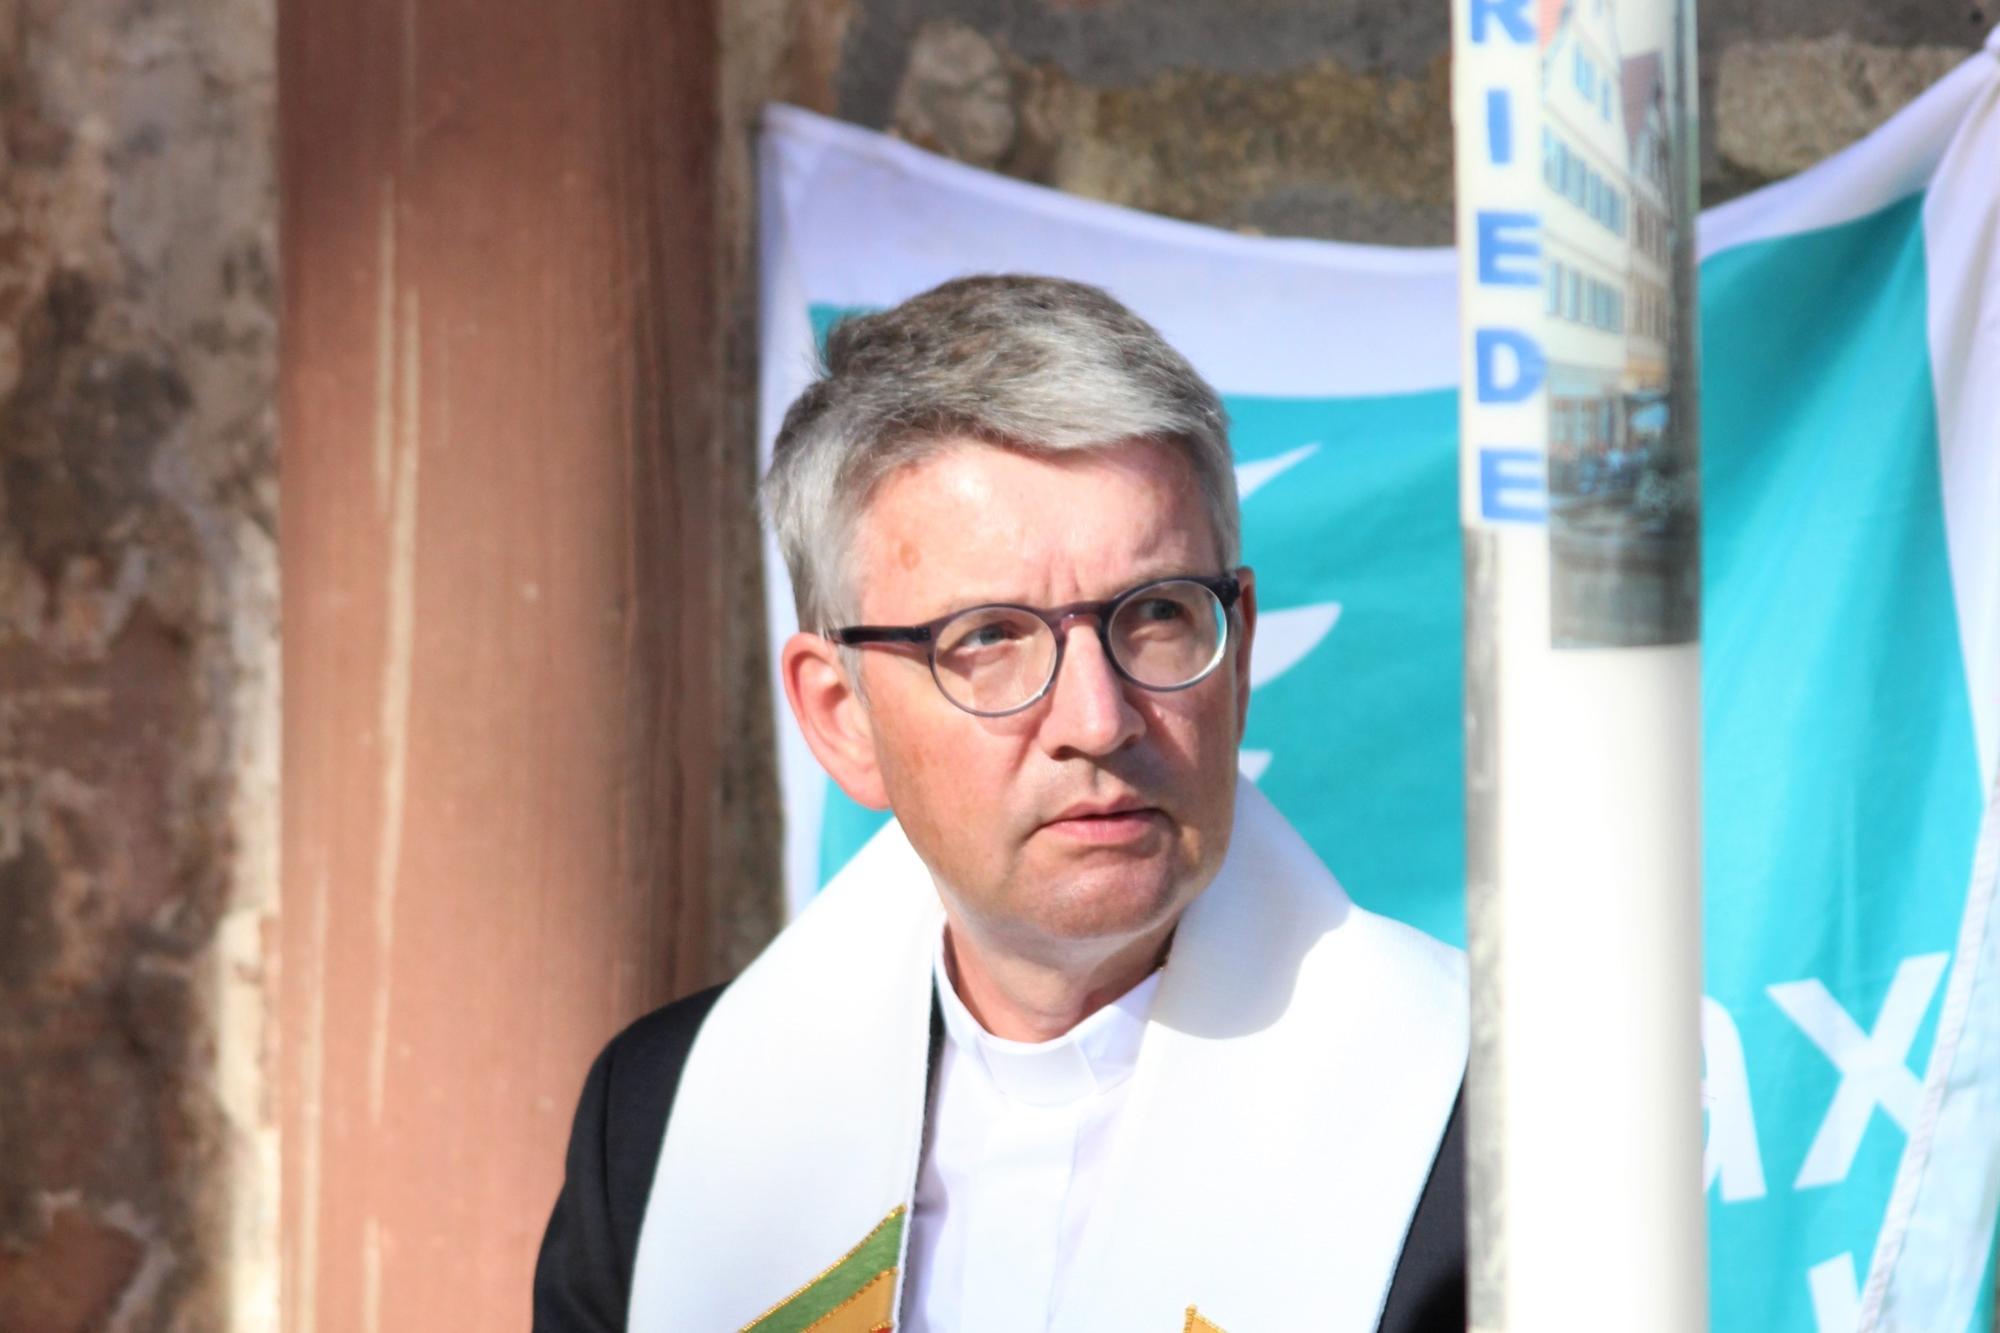 Bischof Peter Kohlgraf ist Präsident von Pax Christi.